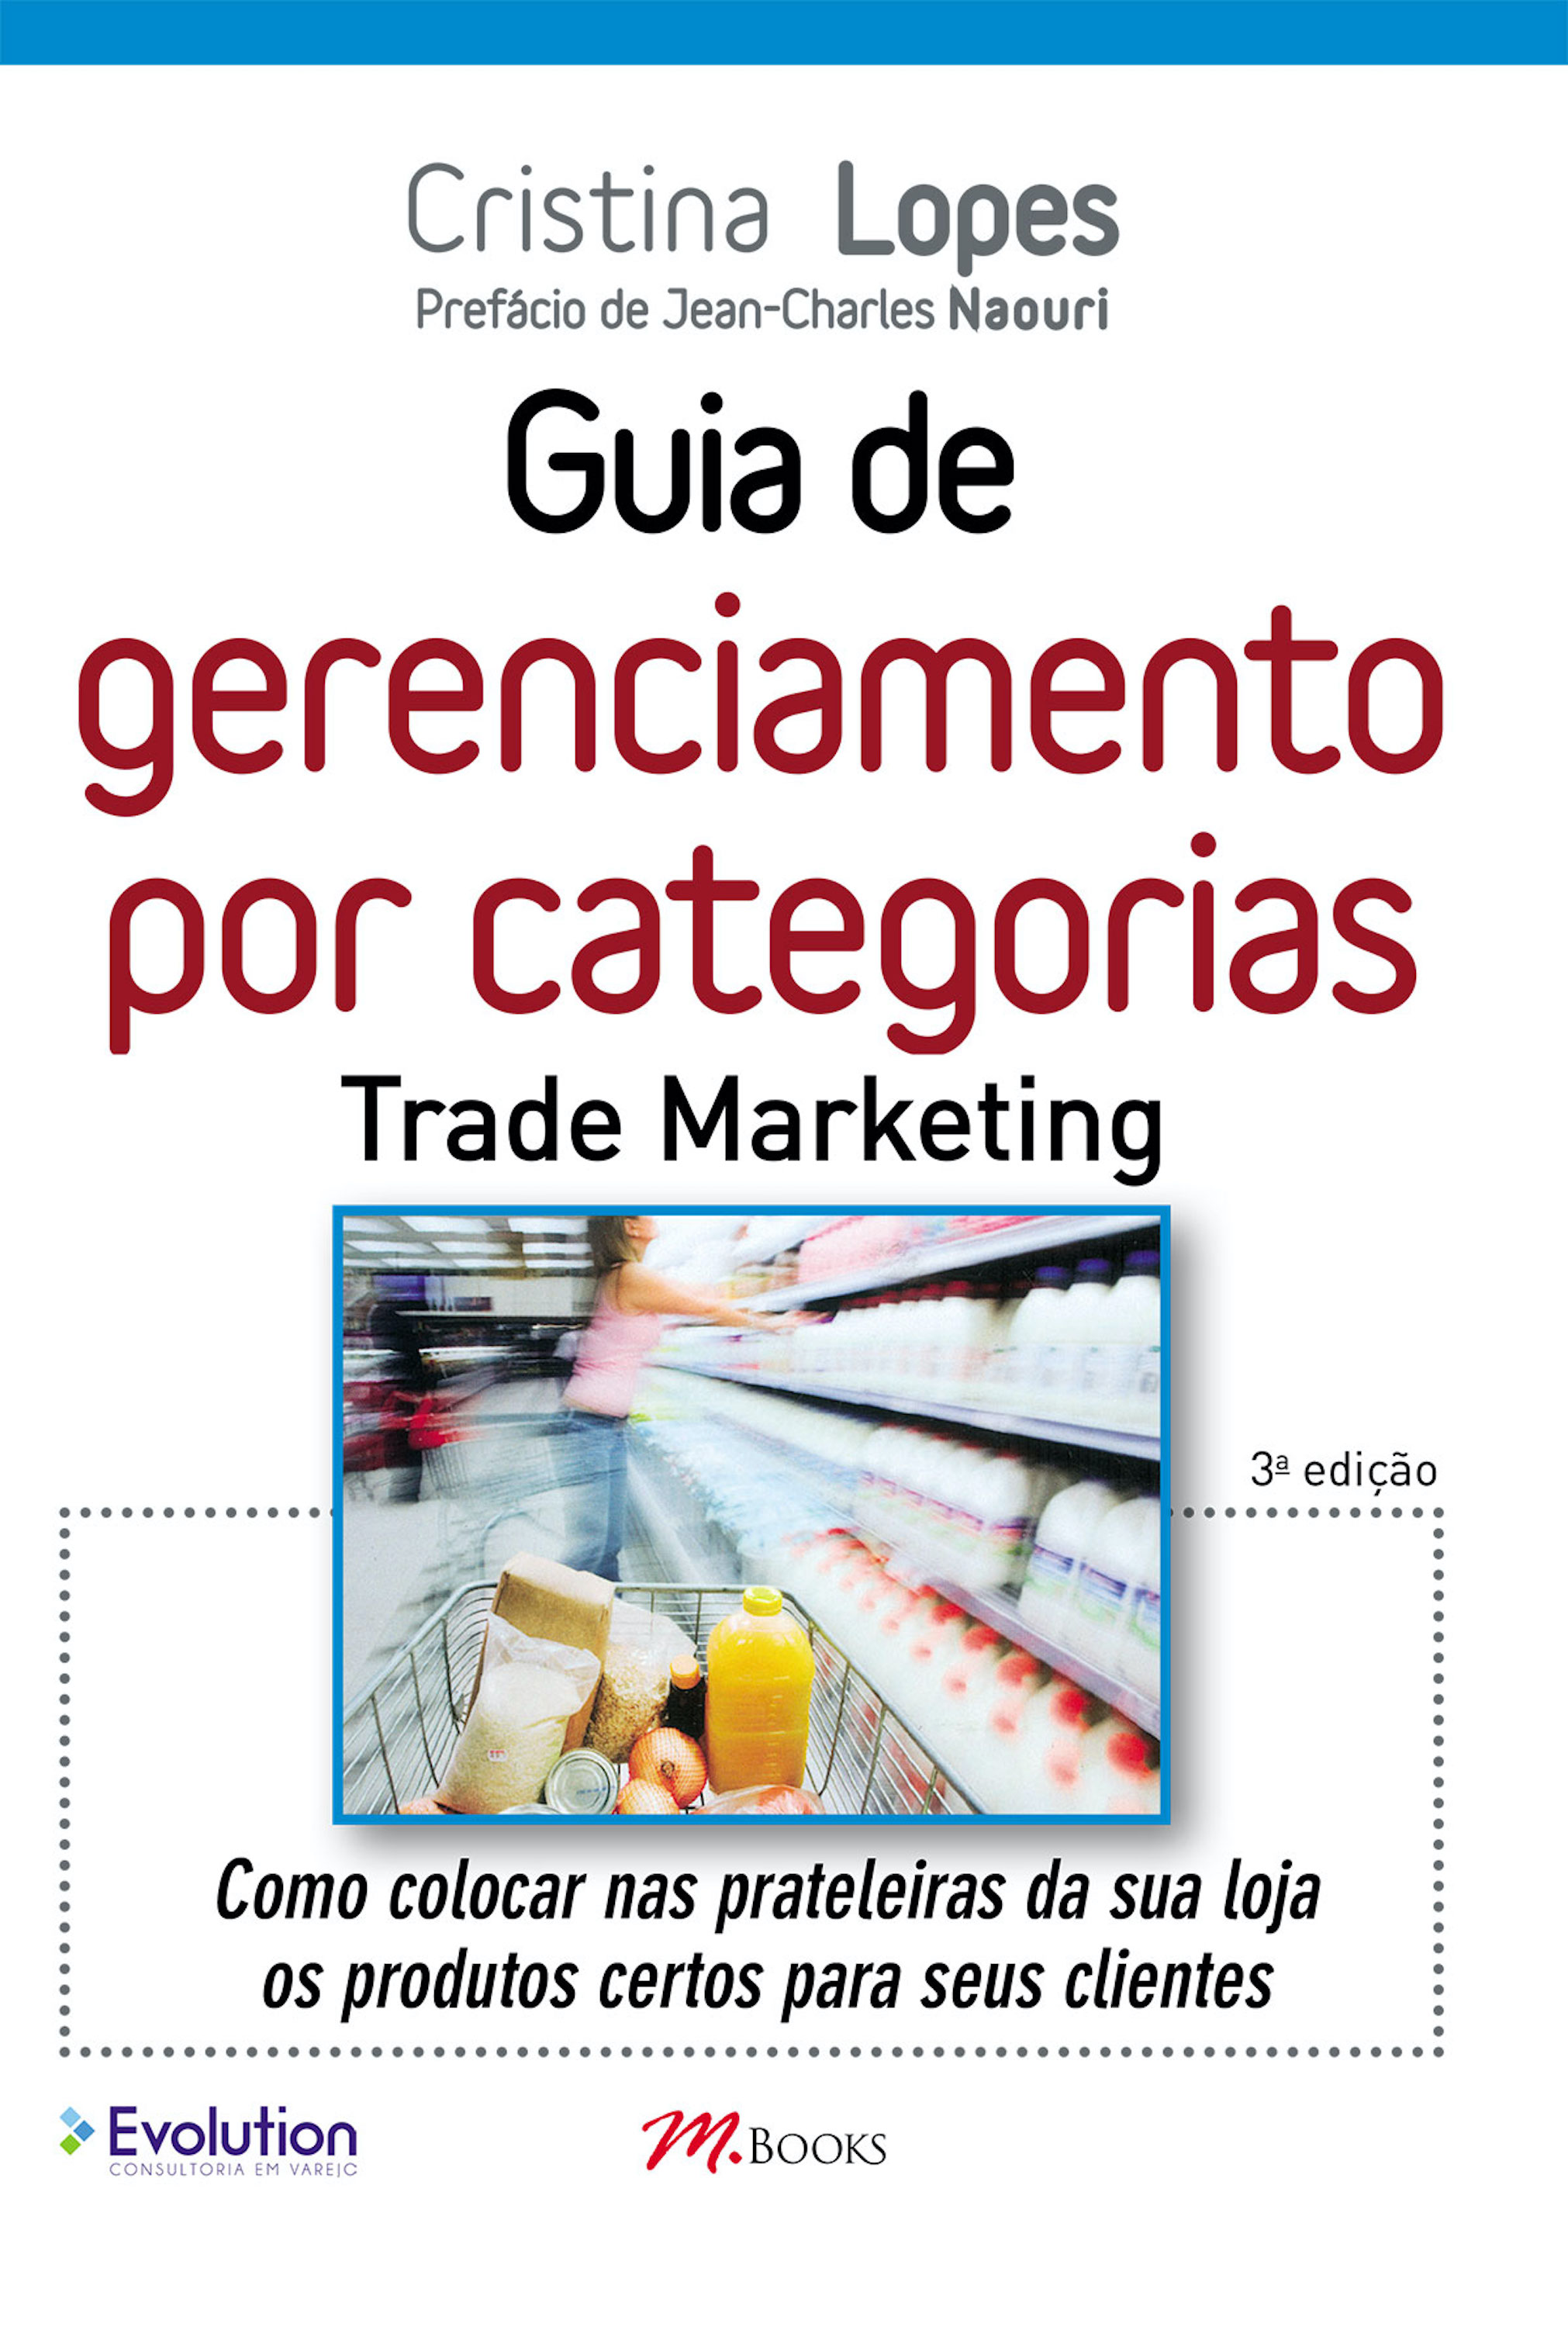 Guia de gerenciamento por categorias - Trade marketing